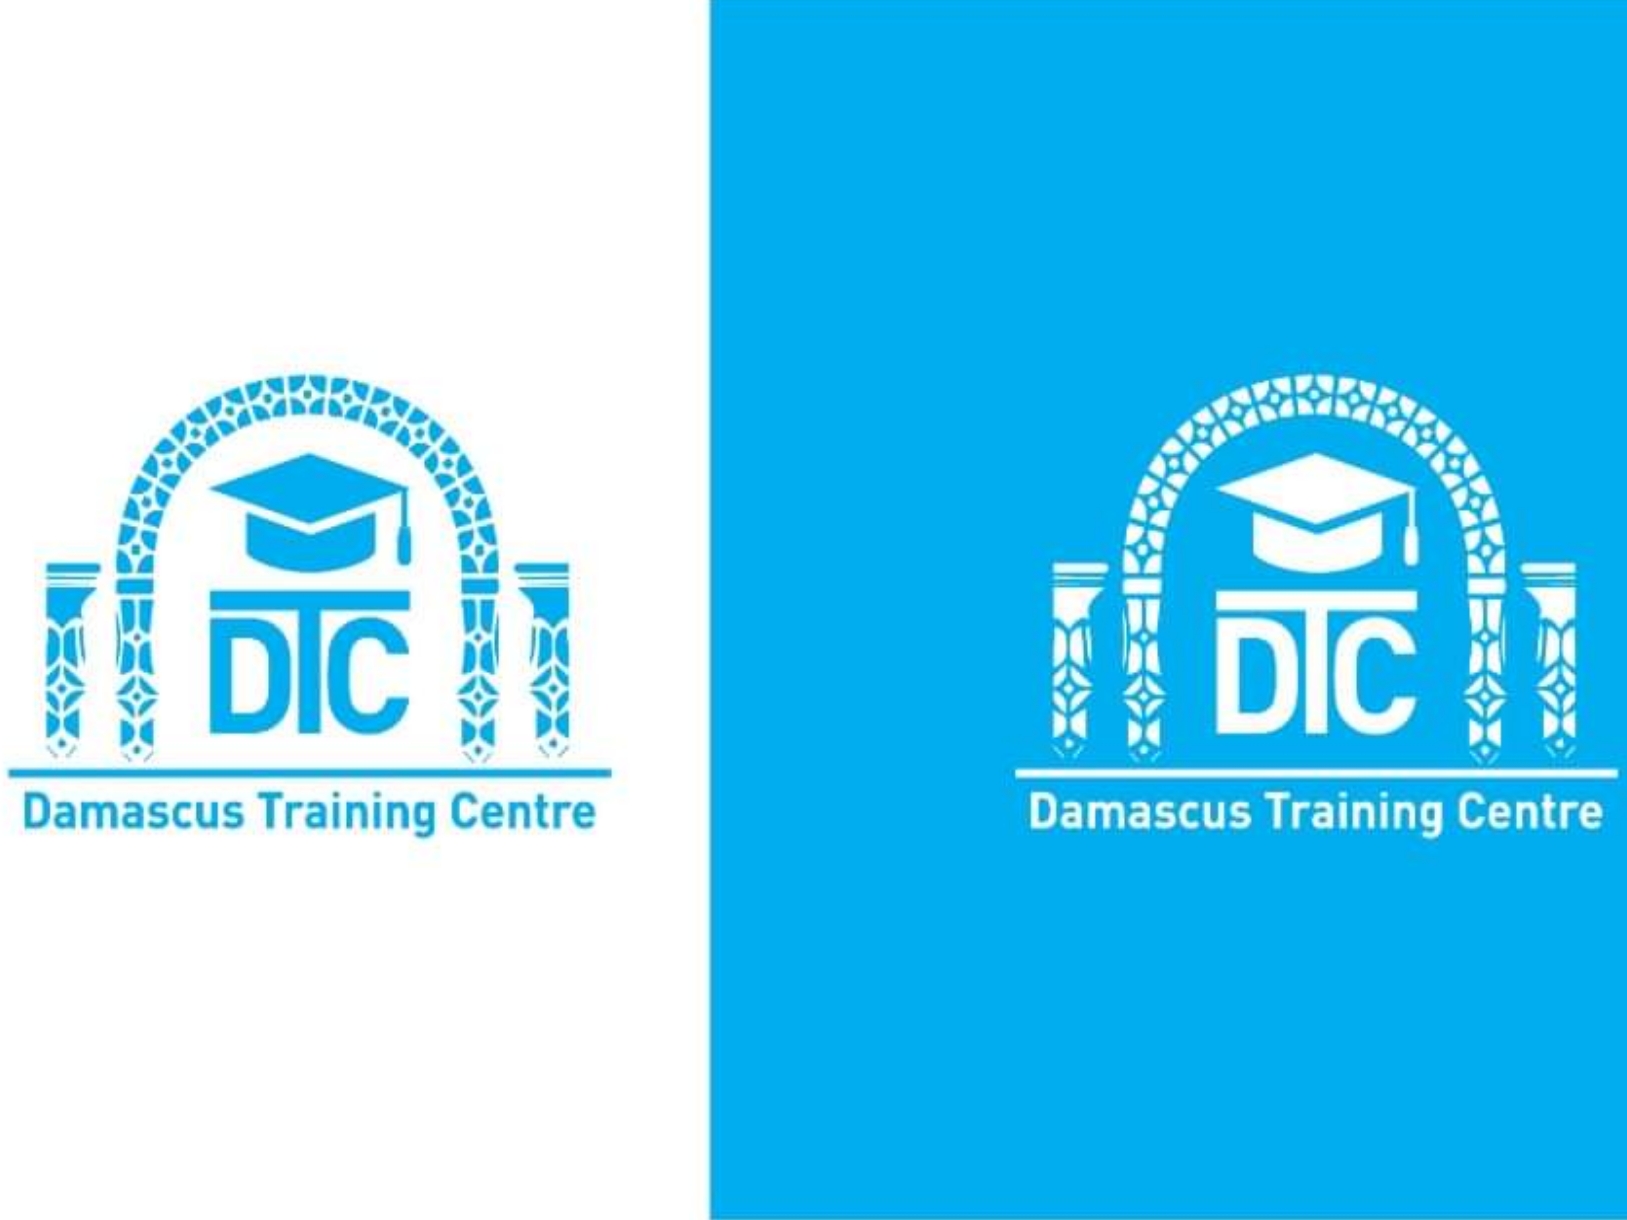 معهد دمشق المتوسط يفتح باب التسجيل لدورات قصيرة الأجل في مجالات مختلفة